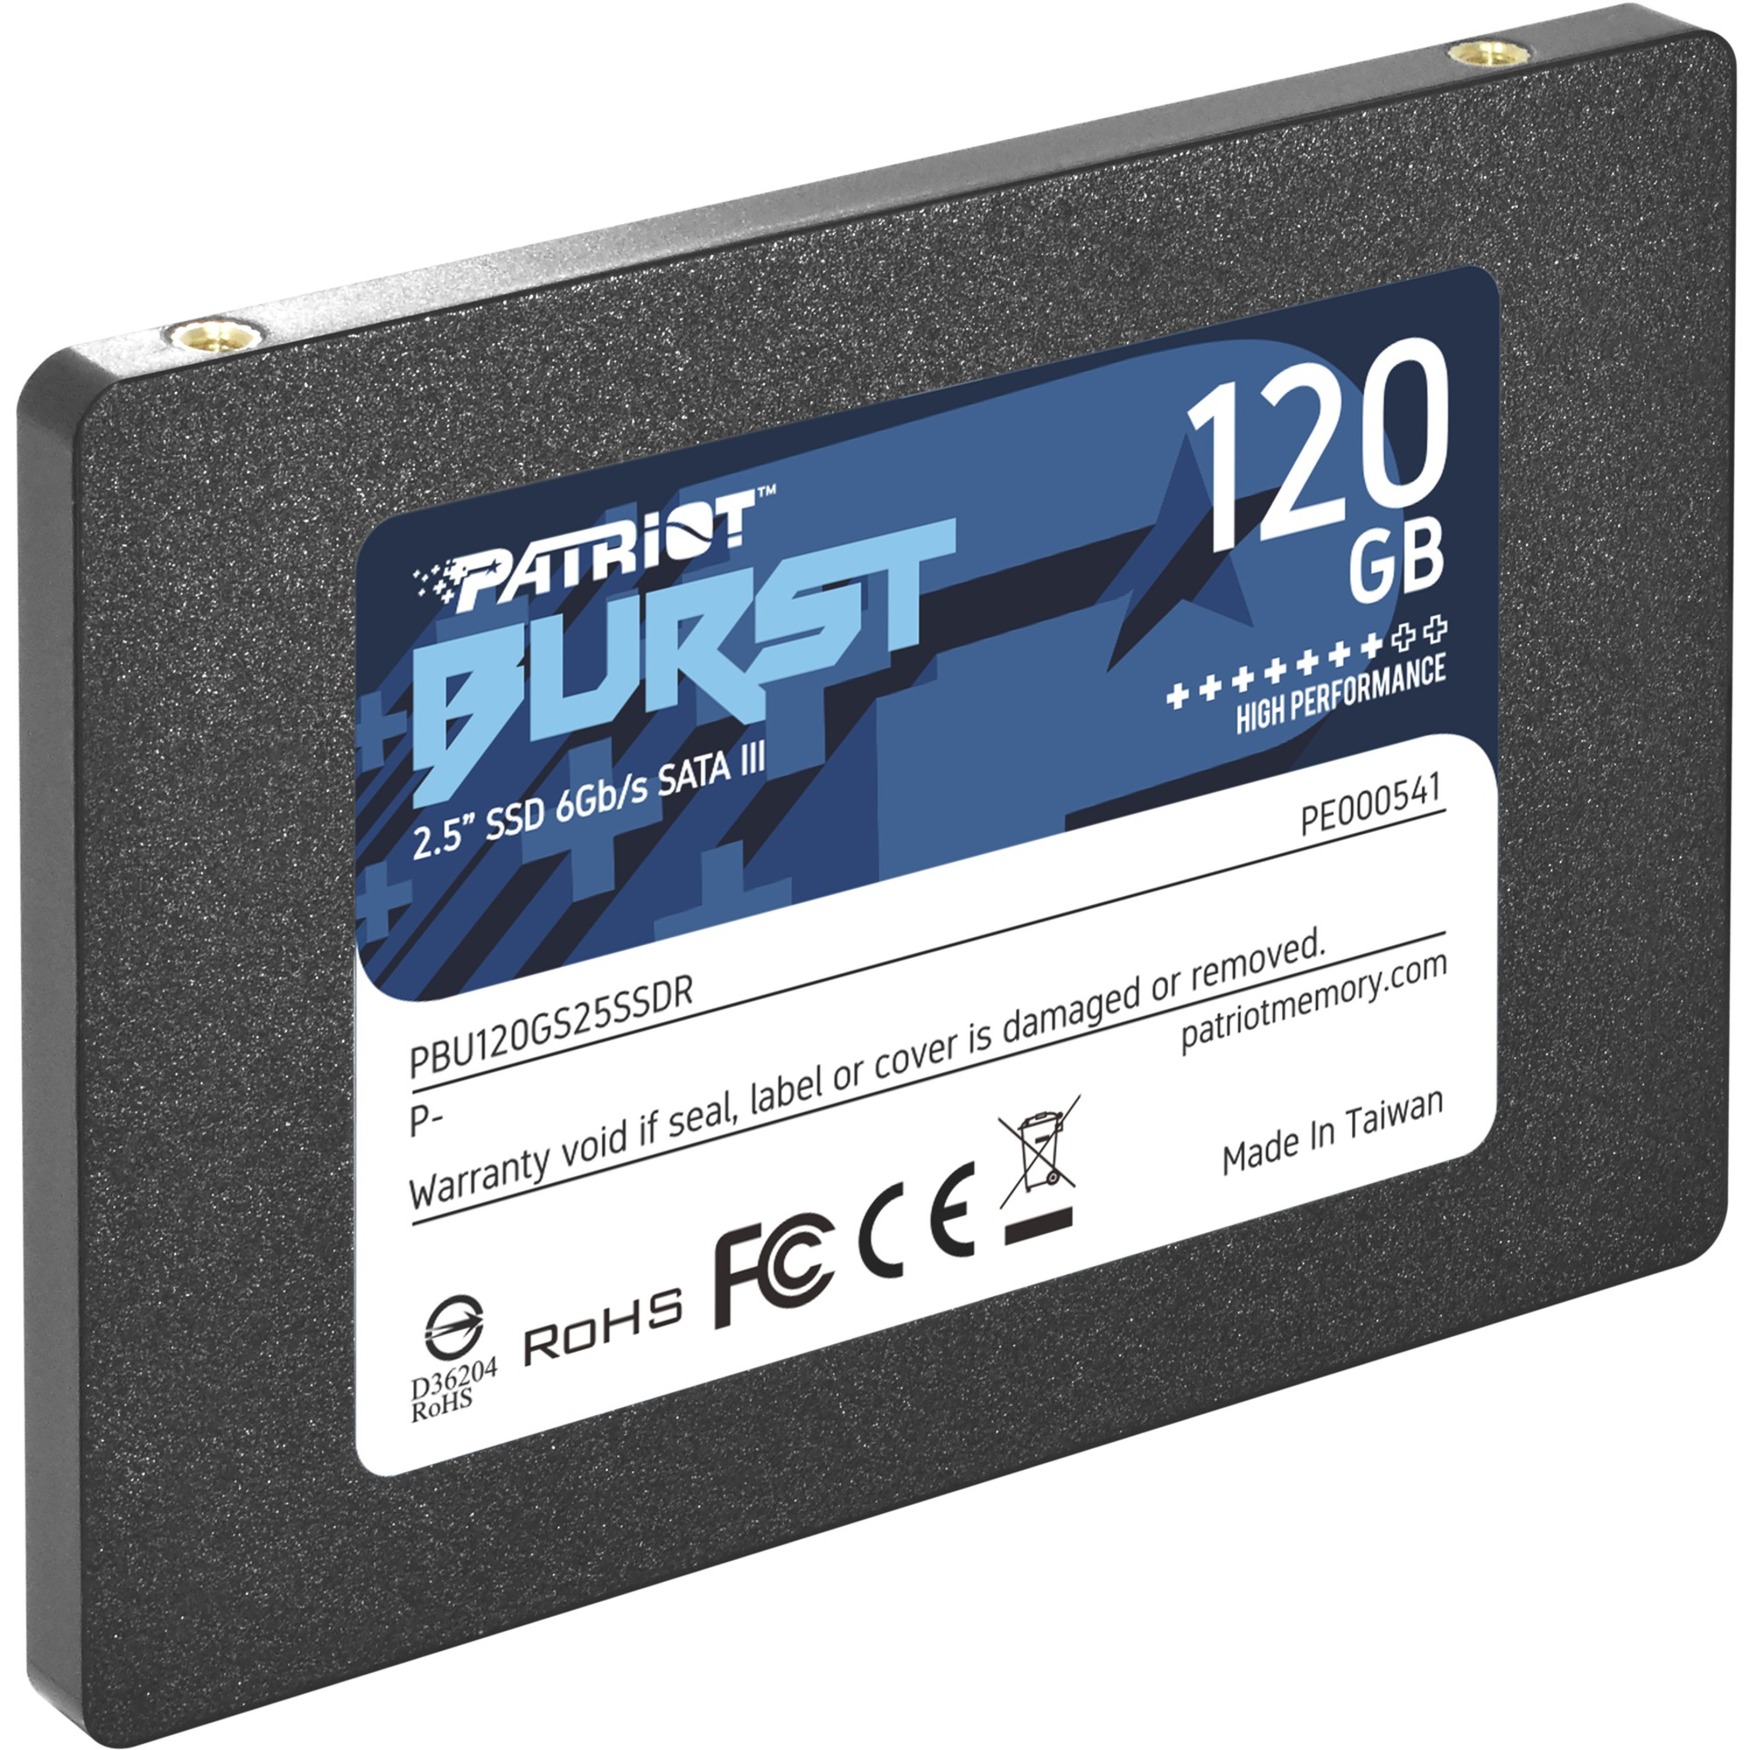 Image of Alternate - Burst 120 GB, SSD online einkaufen bei Alternate